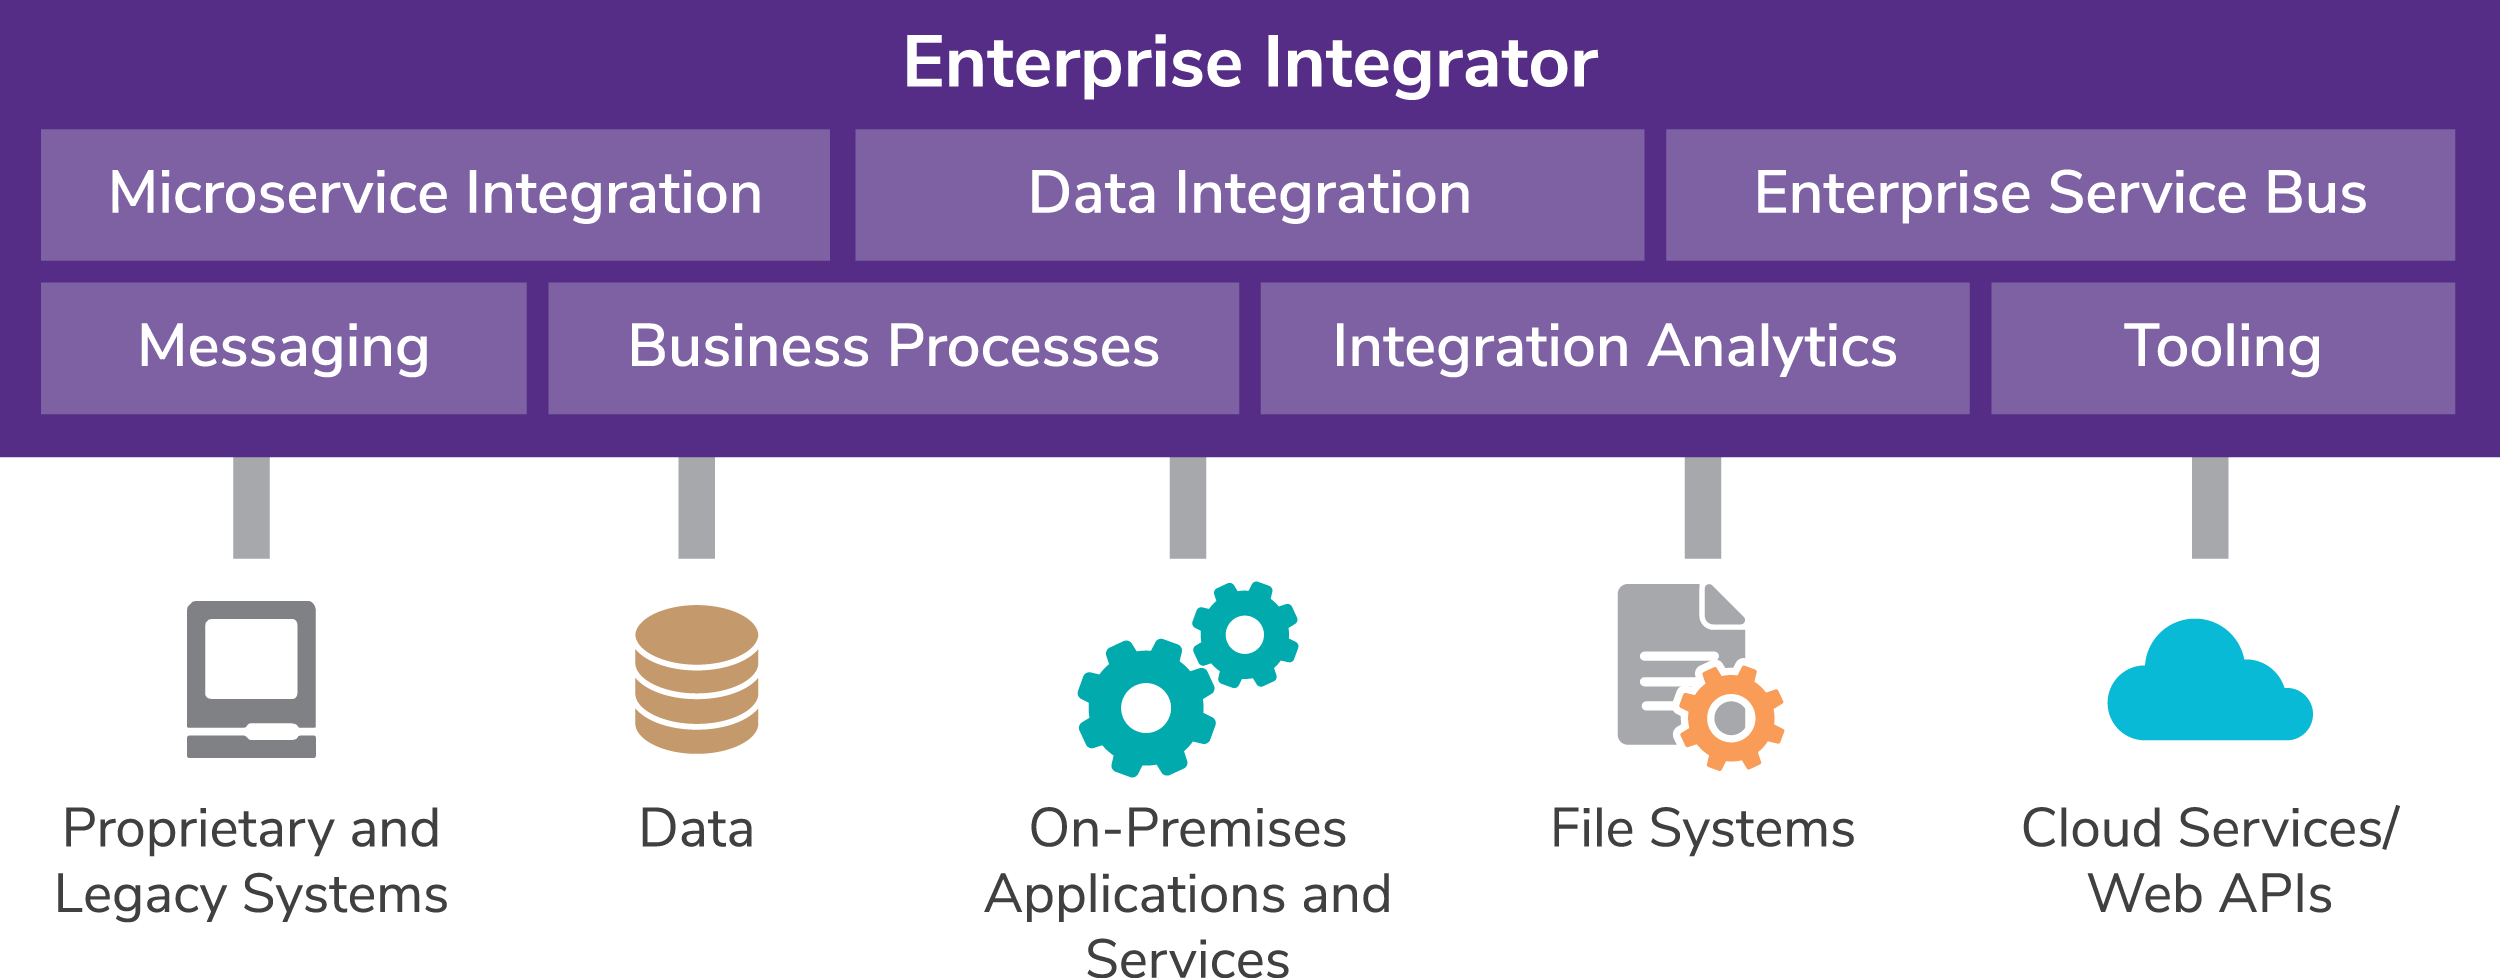 WSO2 Enterprise Integrator - Components